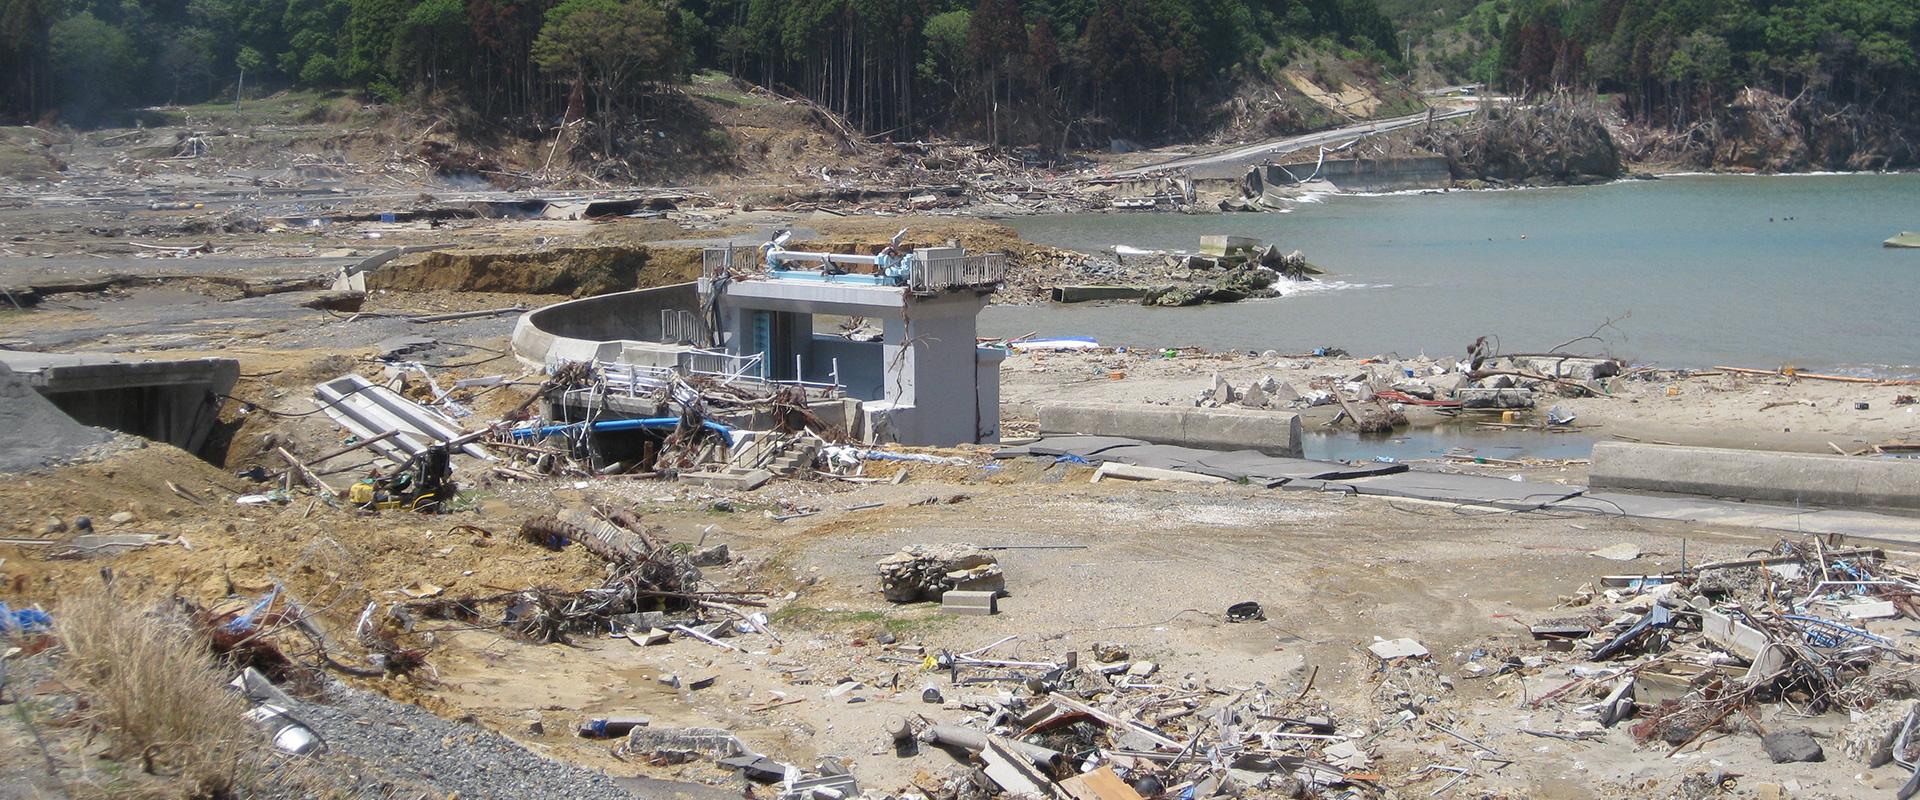 Village de pêcheurs japonais détruit par le tsunami, Japon